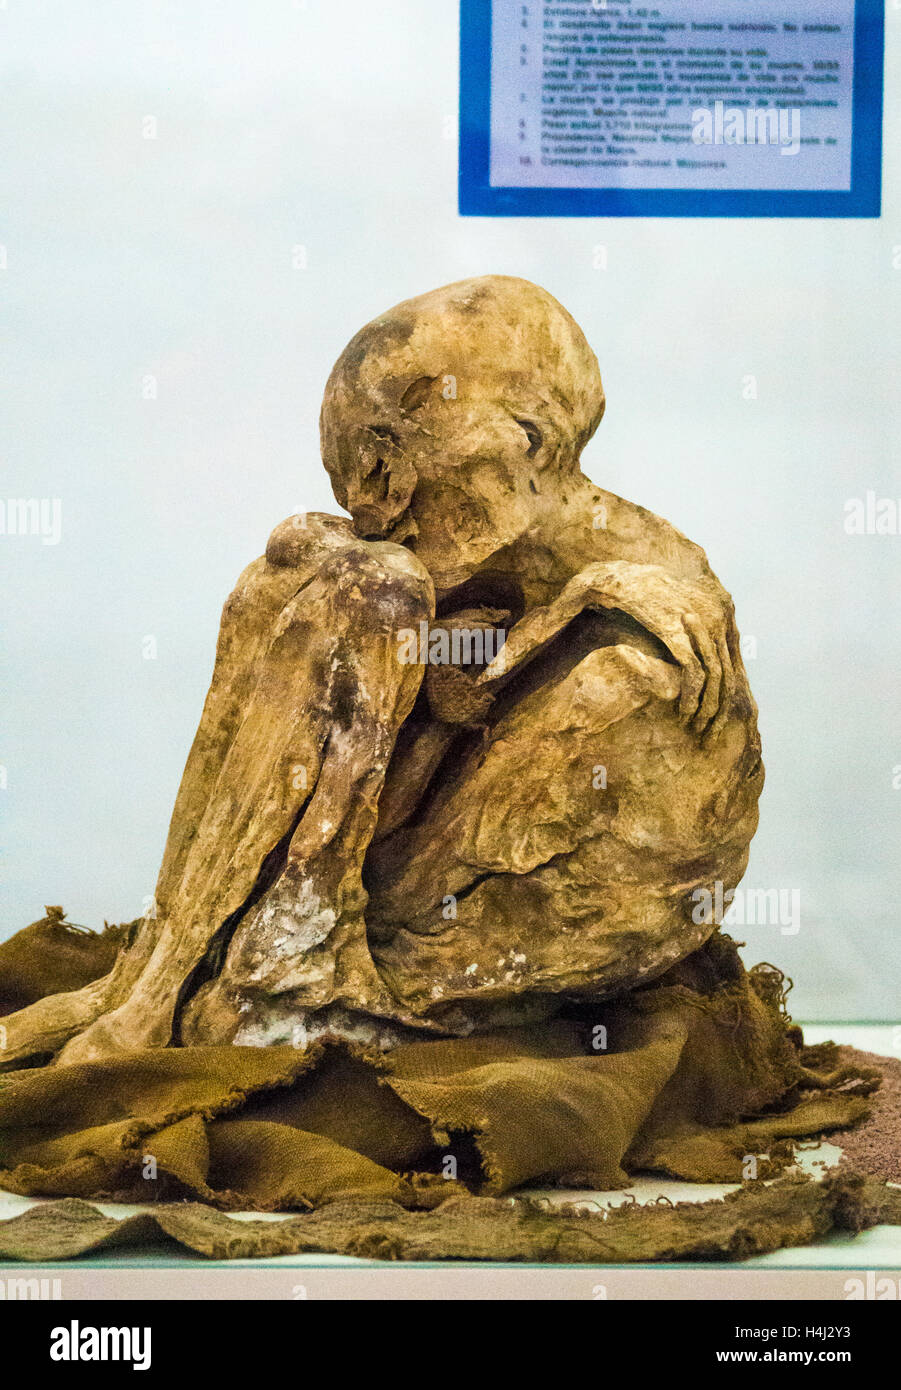 Alten Mumien konserviert in den trockenen Höhenklima des Altiplano von Bolivien, jetzt konserviert in den Charcas Universität Museen in Sucre Stockfoto